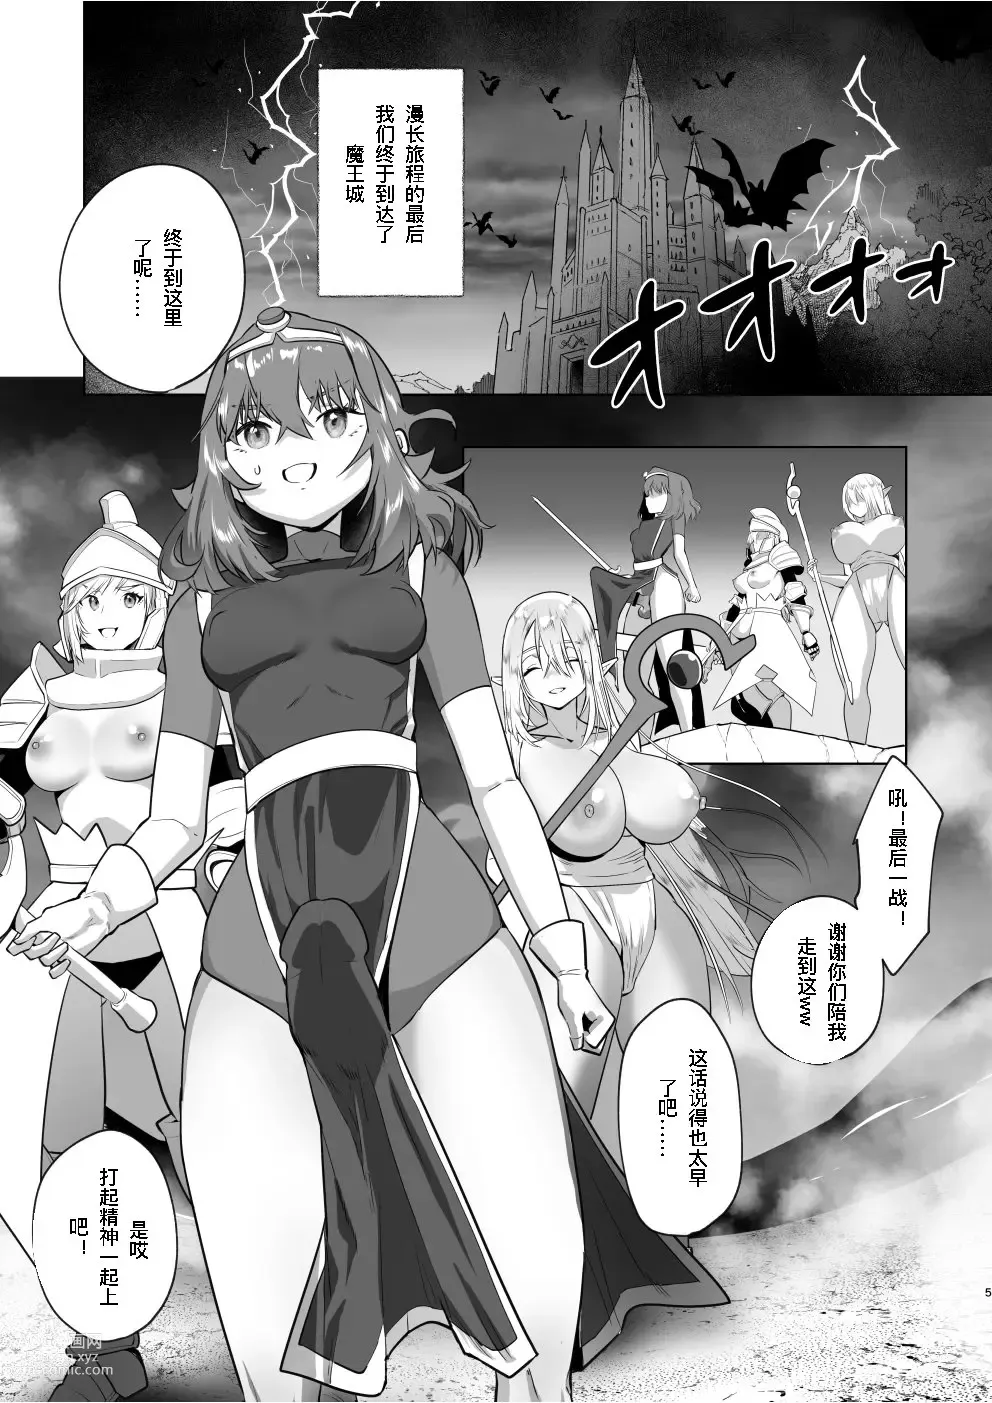 Page 4 of doujinshi 异世界转生后变成了扶她勇者 3